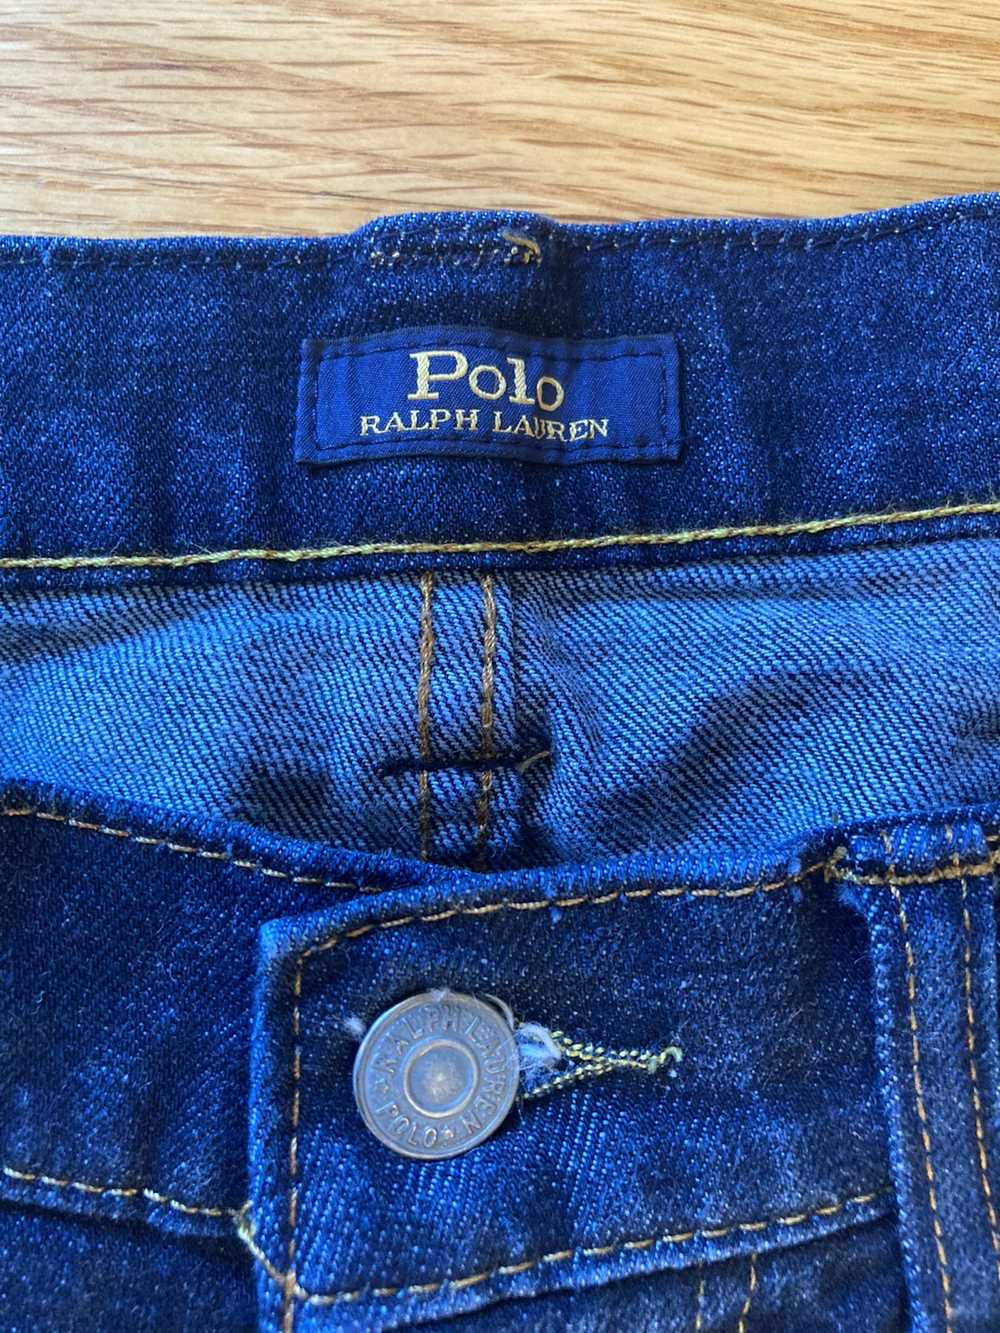 Polo Ralph Lauren Vintage Polo Ralph Lauren jeans - image 4